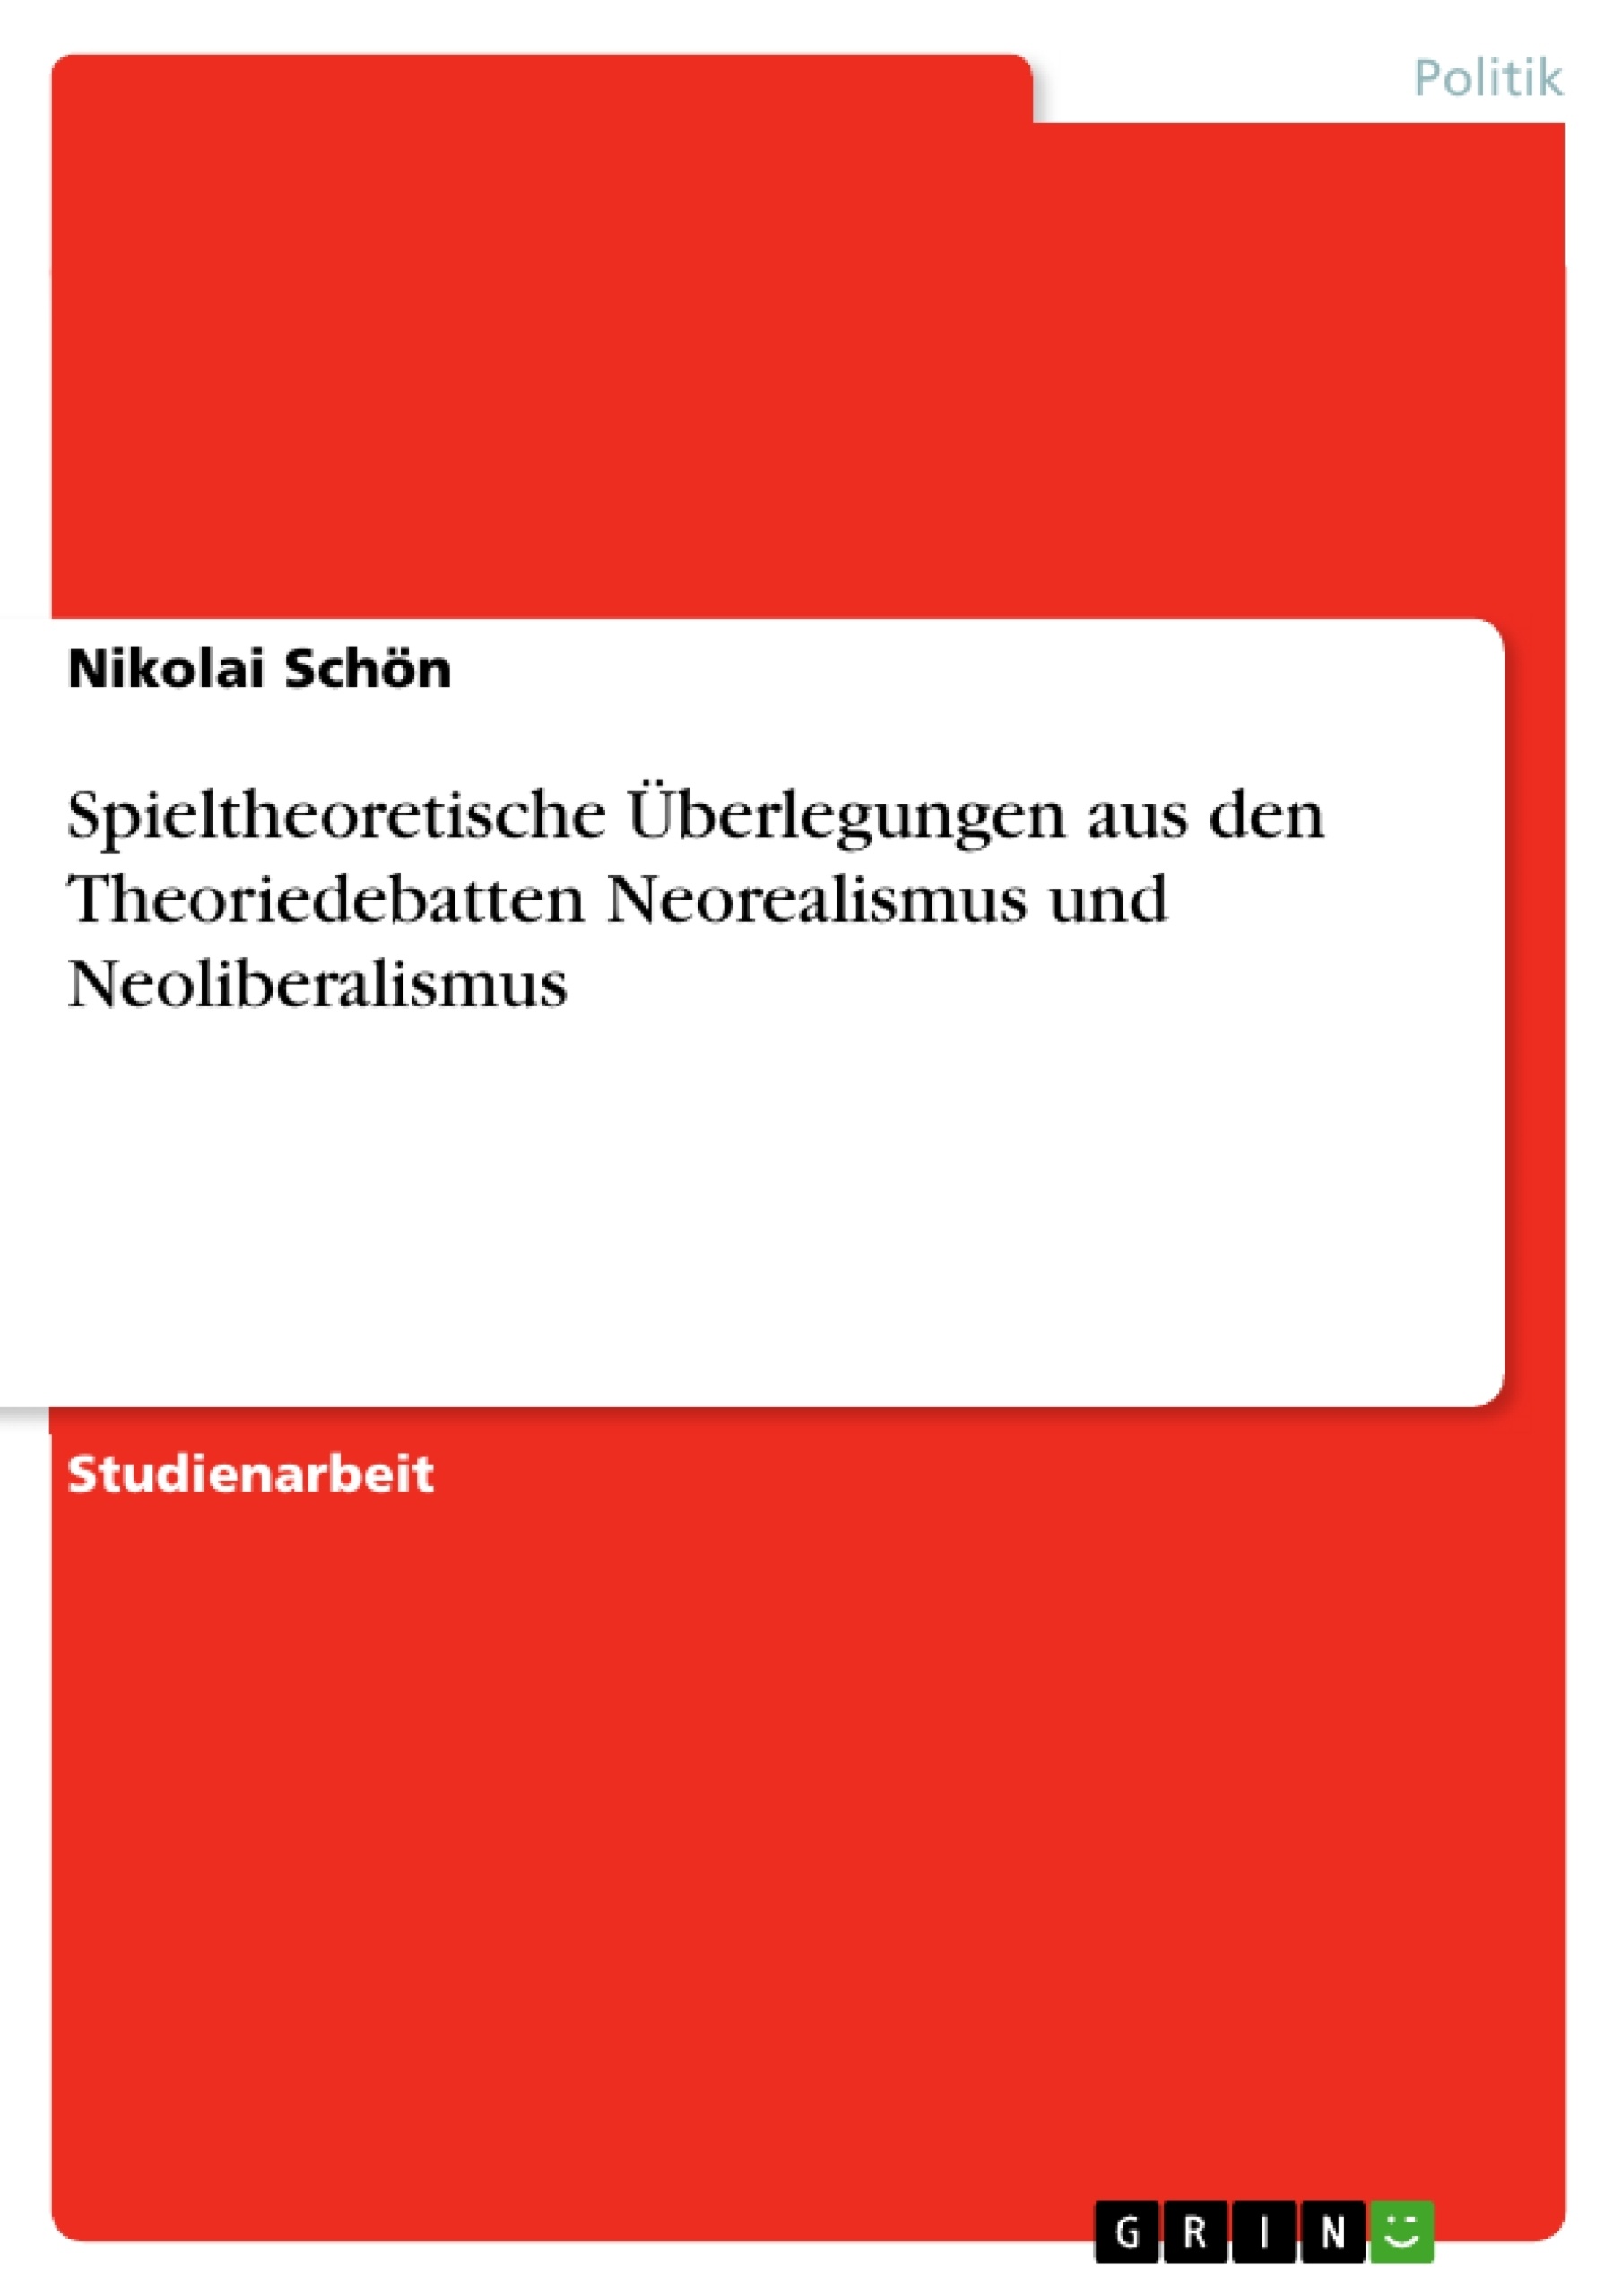 Title: Spieltheoretische Überlegungen aus den Theoriedebatten Neorealismus und Neoliberalismus